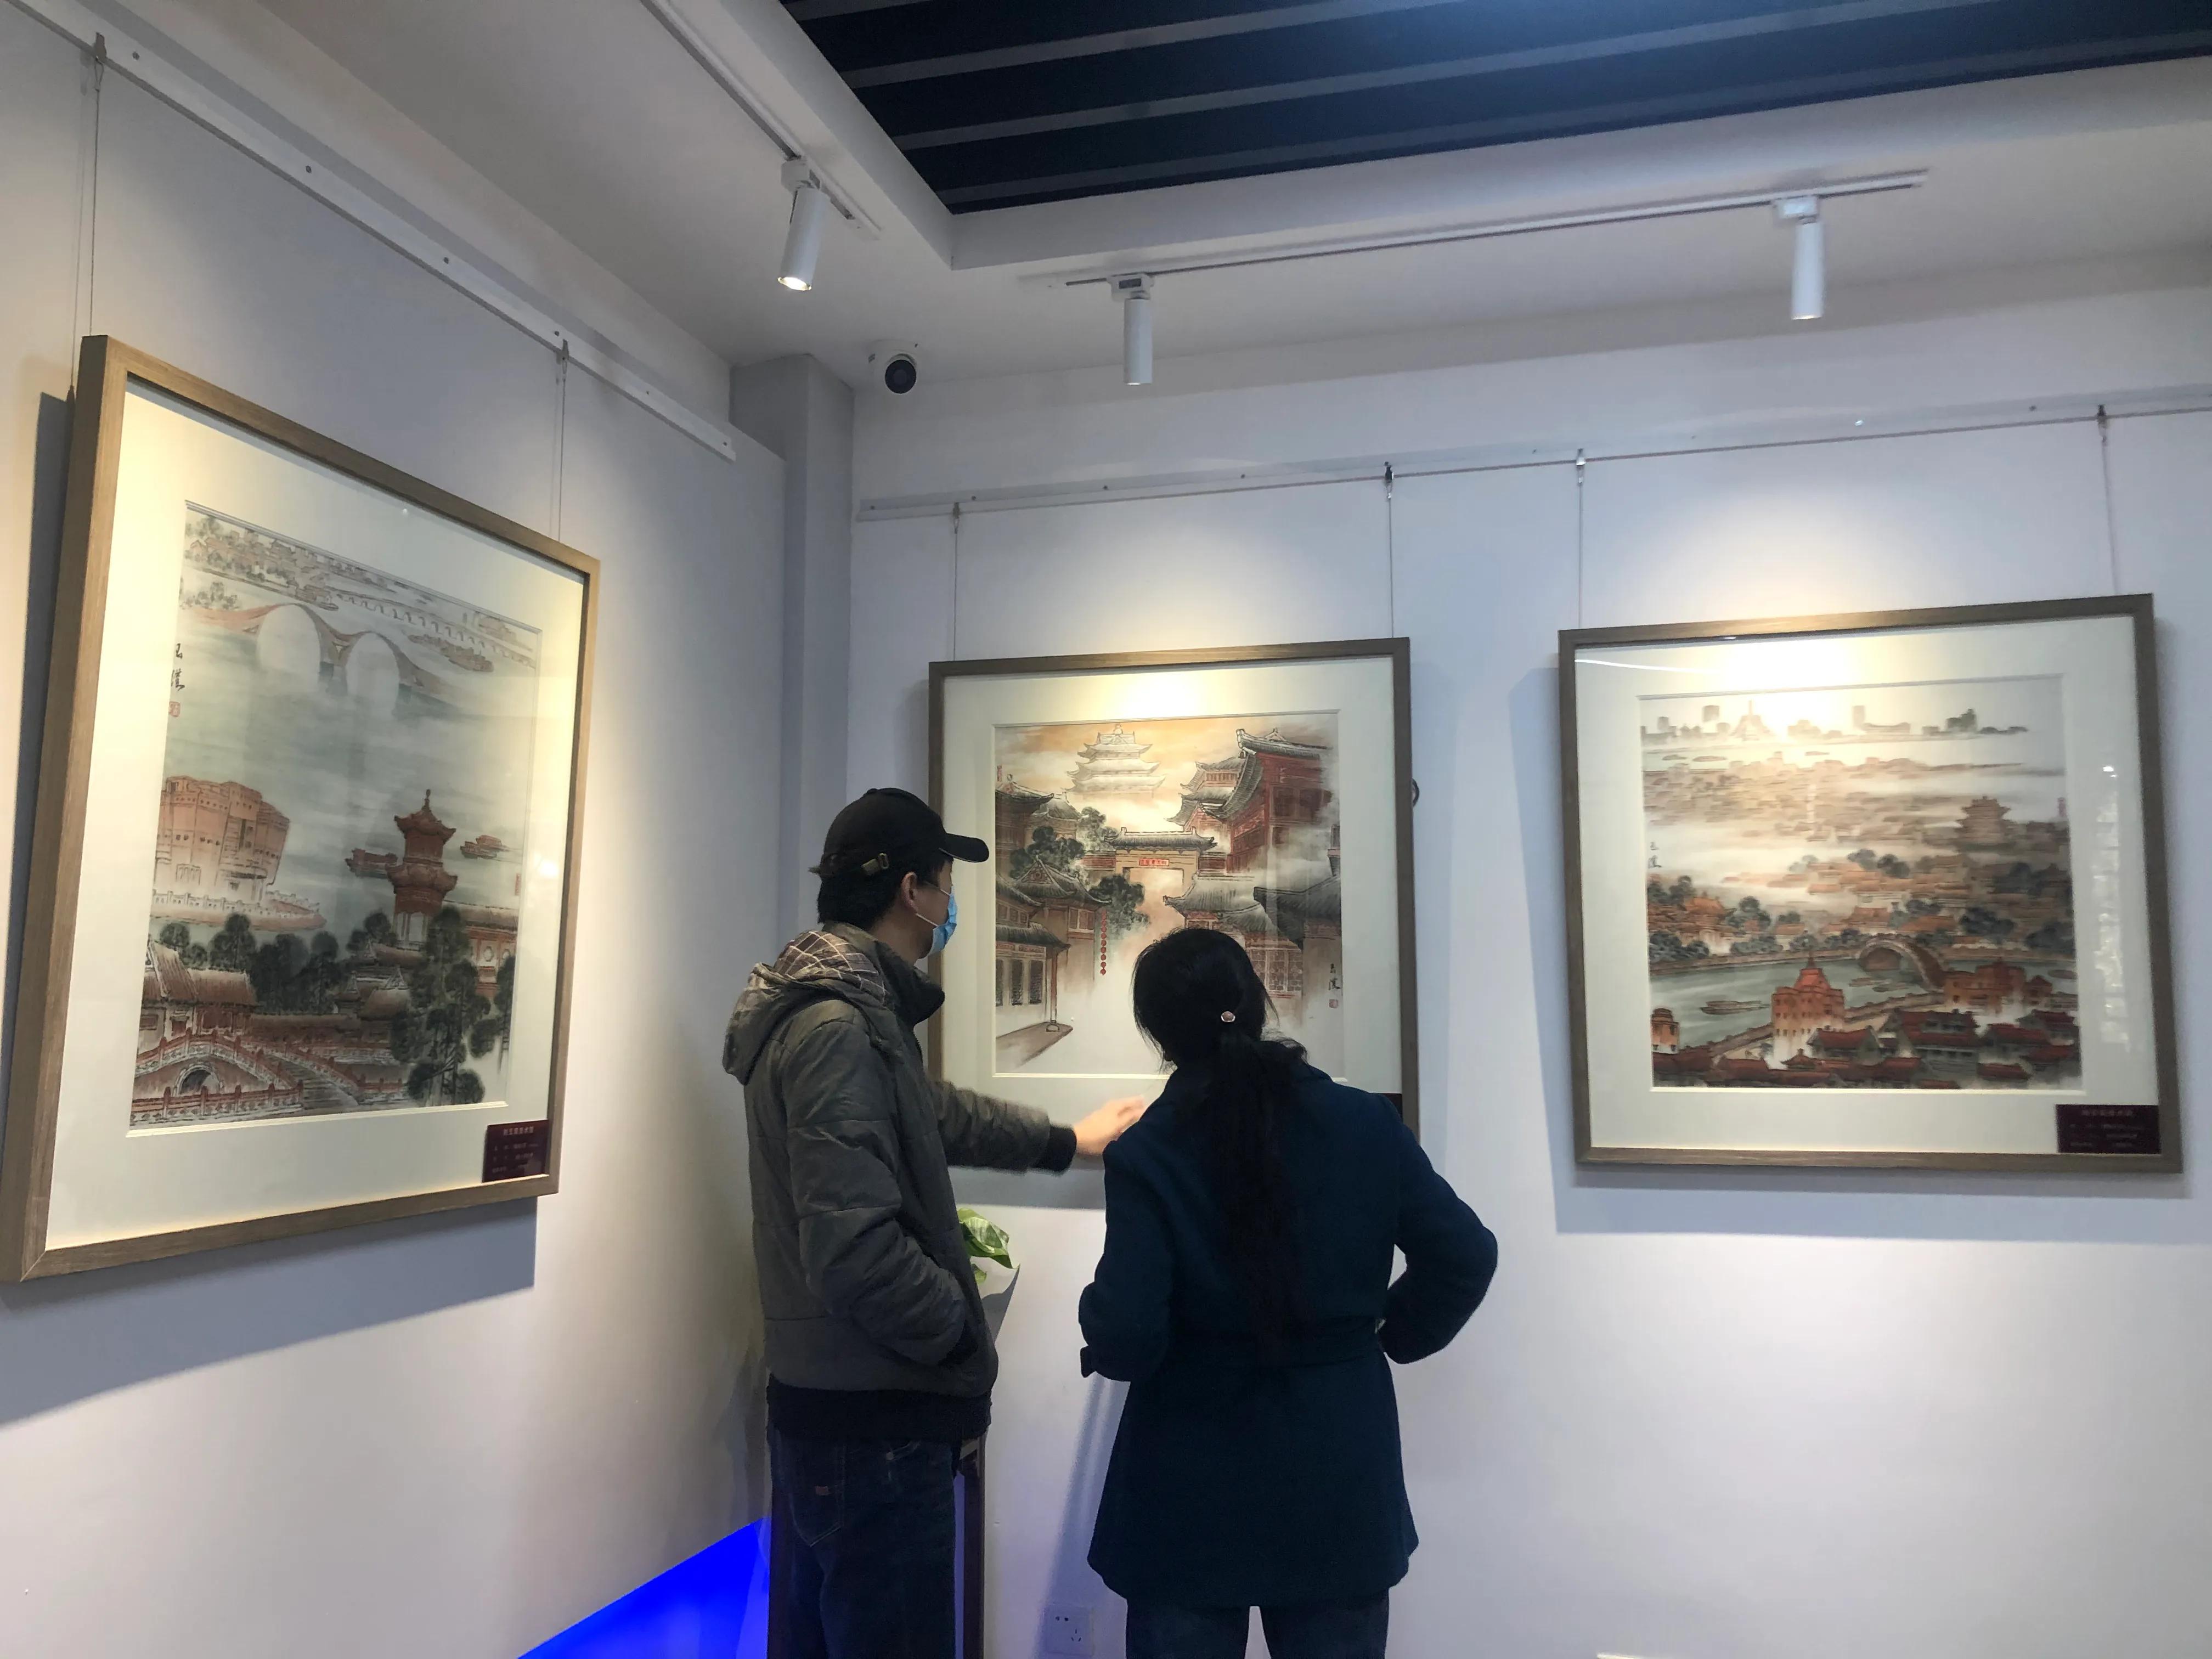 著名画家刘玉璞美术馆开馆典礼暨捐赠仪式在聊城举行，绘烟波浩渺装点秀丽古城